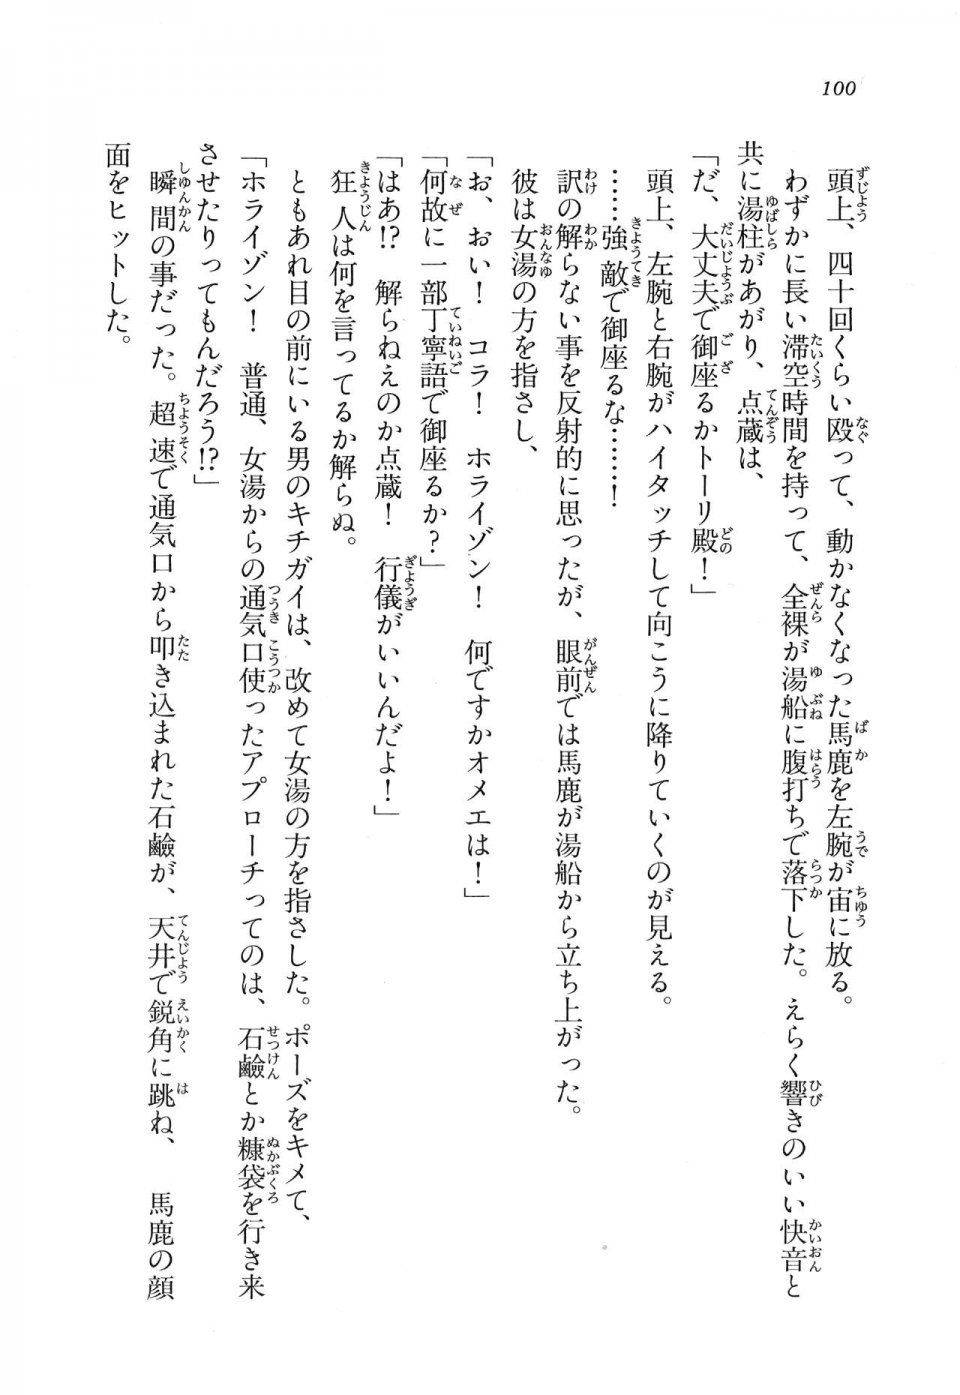 Kyoukai Senjou no Horizon LN Vol 16(7A) - Photo #100